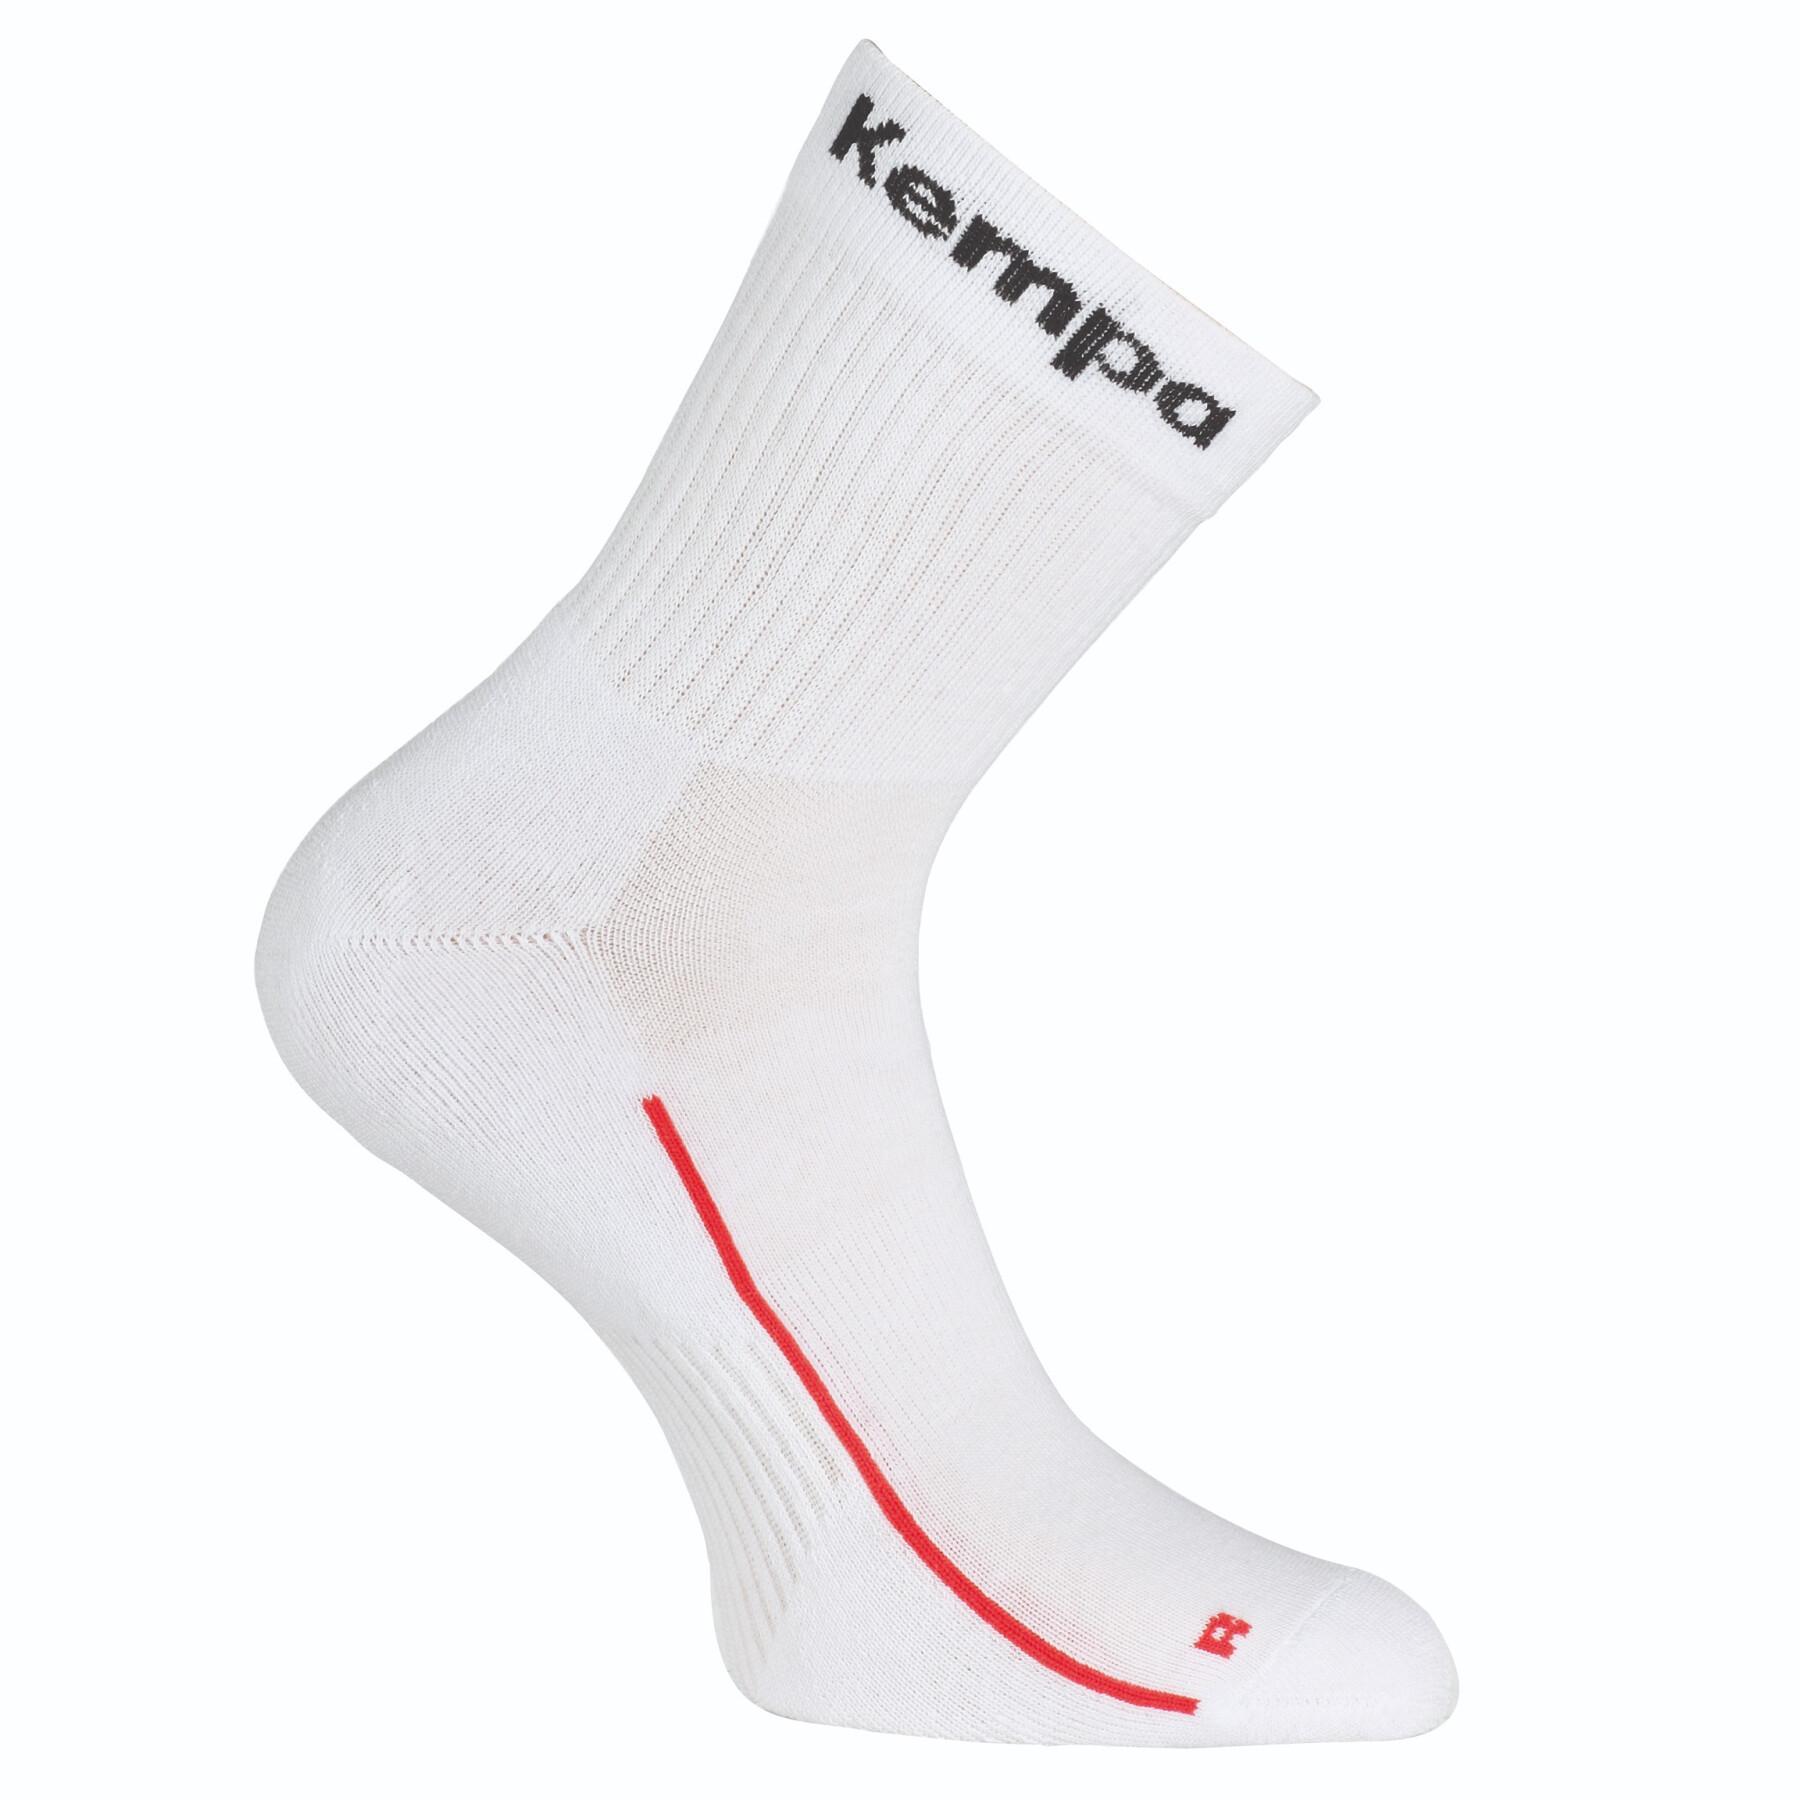 Förpackning med 3 par strumpor Kempa Team classic